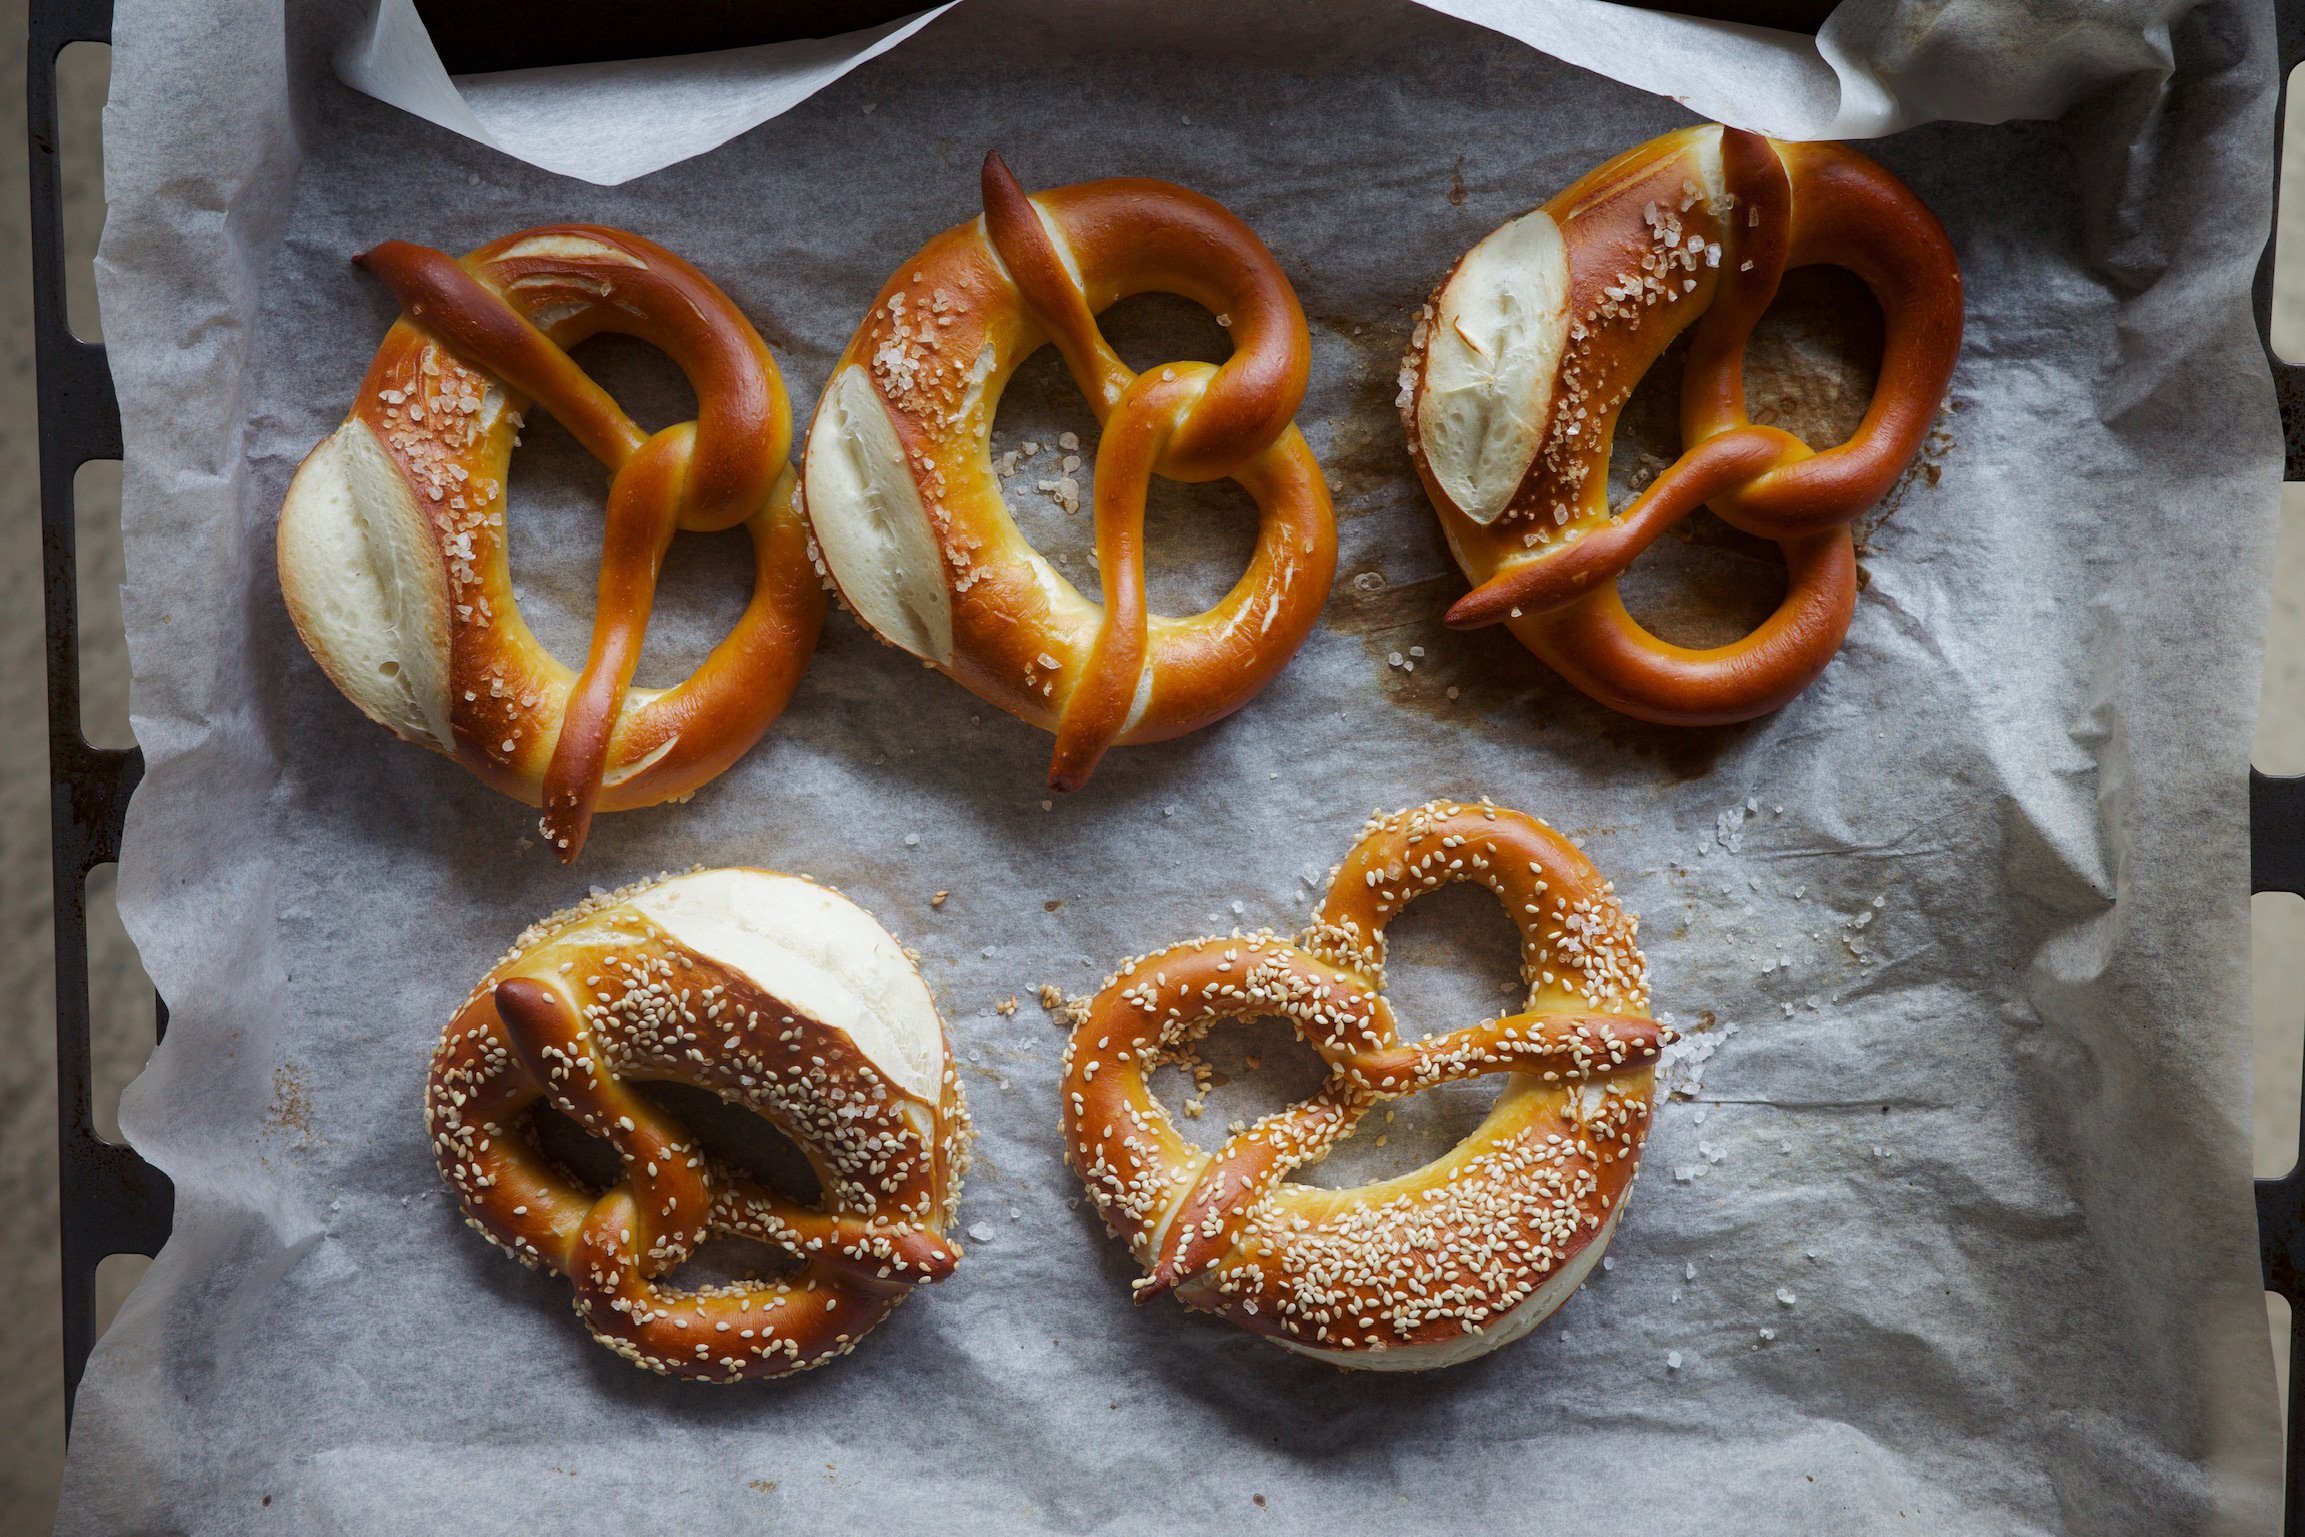 5 pretzels on a baking tray.